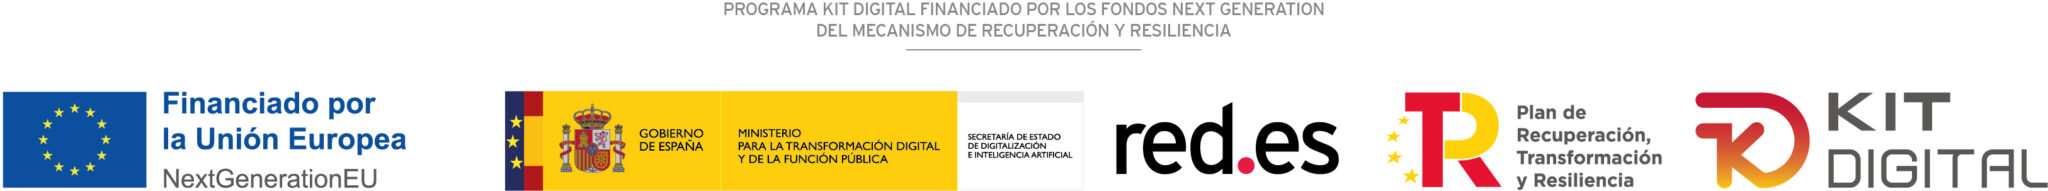 conbandera kitdigital scaled Nuevas ayudas para la digitalización de pymes y autónomos: el Programa Kit Digital llega a España